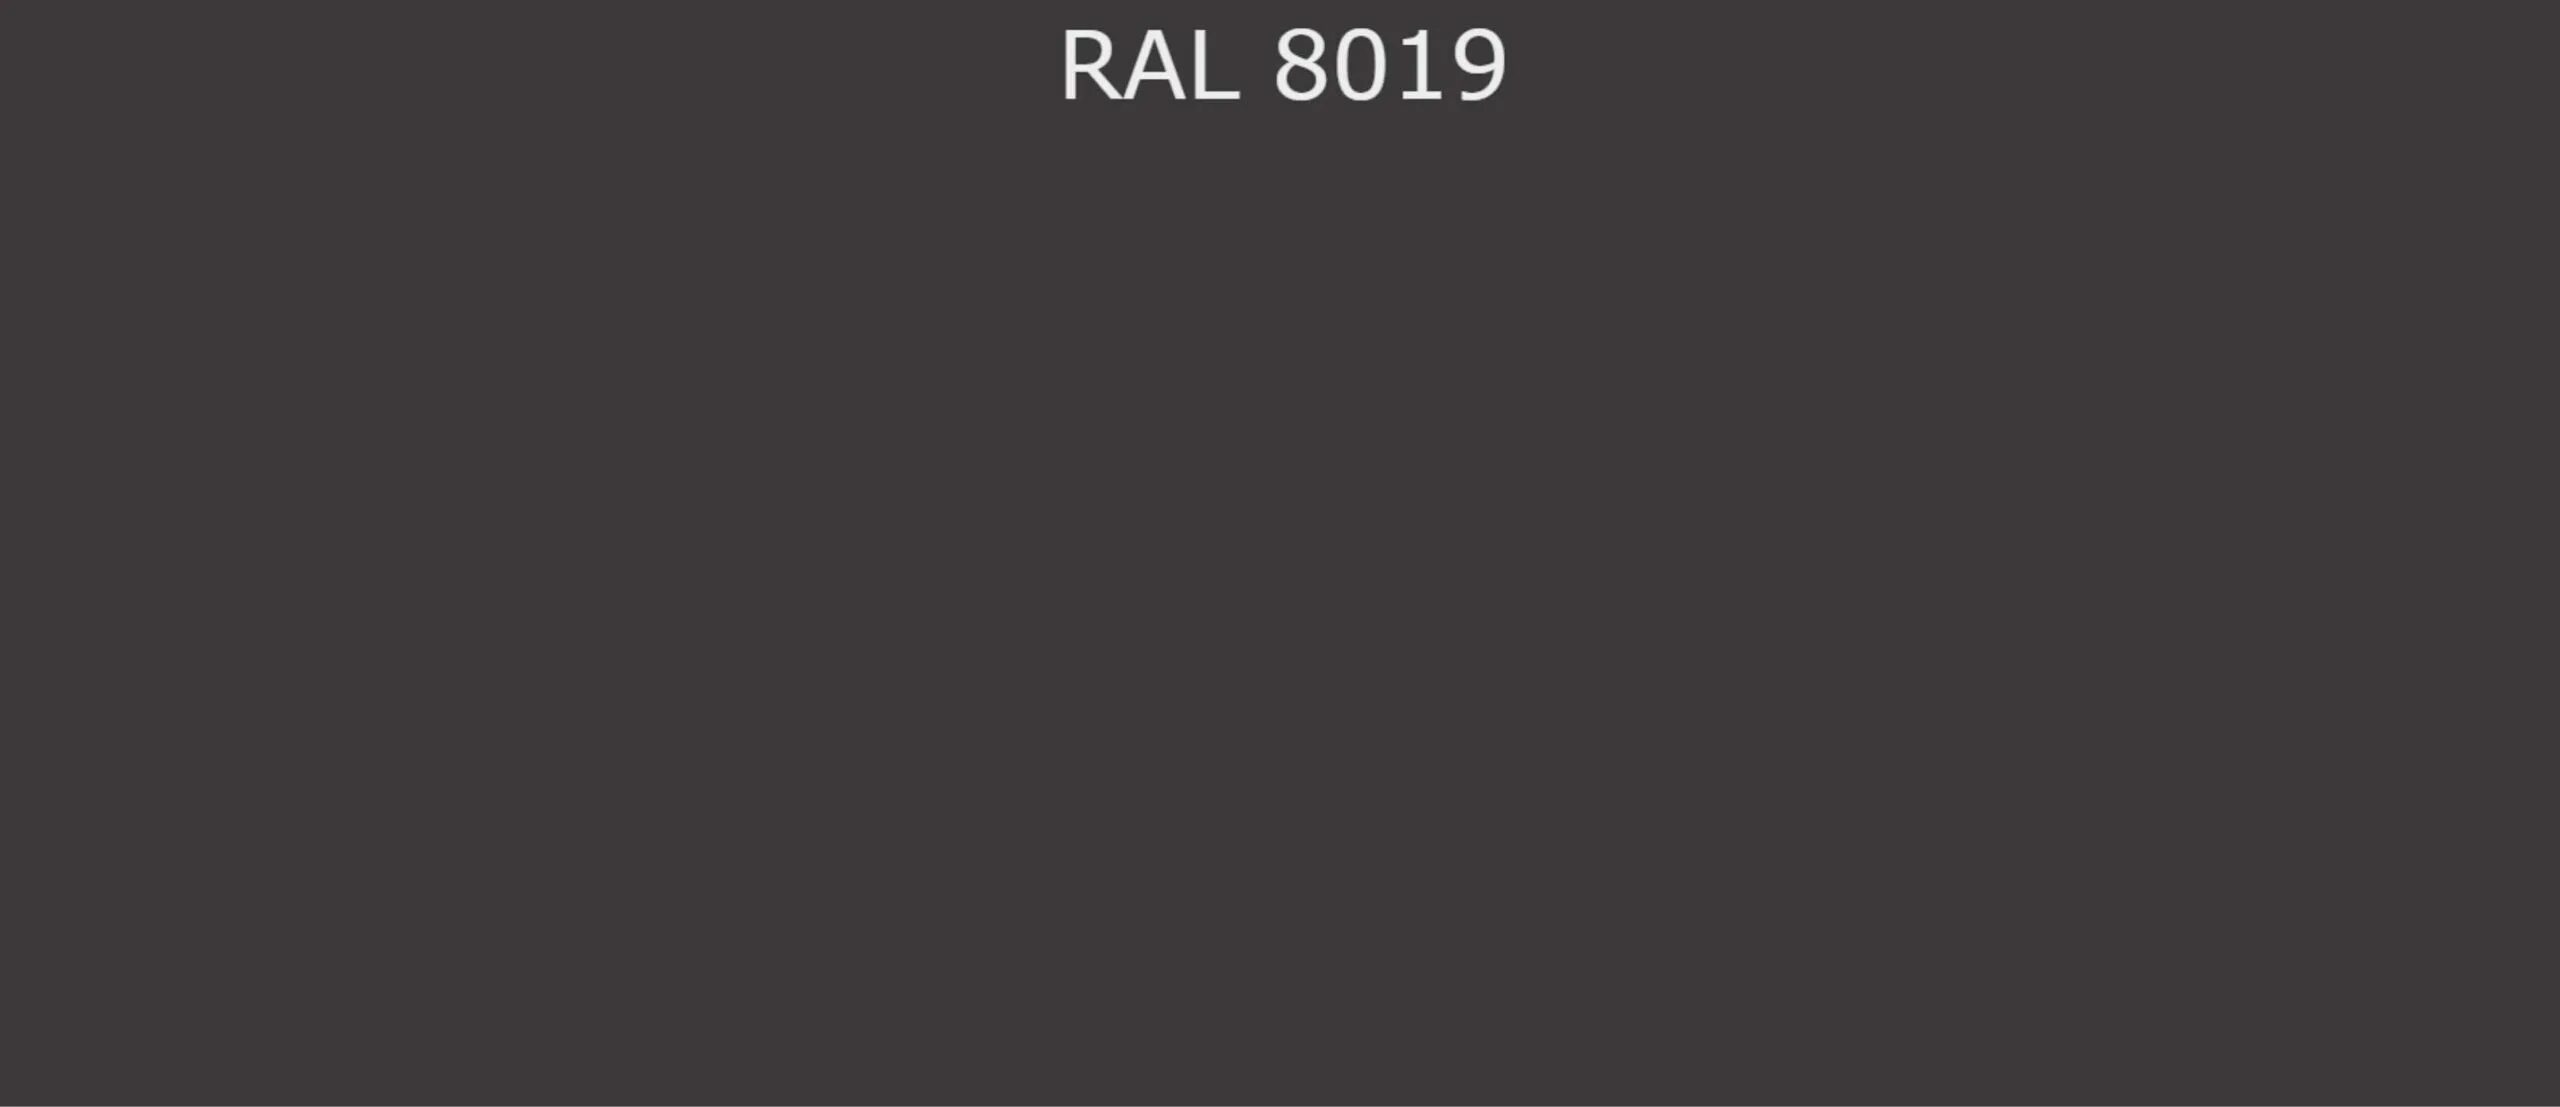 Северный лис новый рал читать полностью. Рал 9004 и 9011. Цвет RAL 9011. Ral9004 и ral9005. RAL 9011 графитно-чёрный.